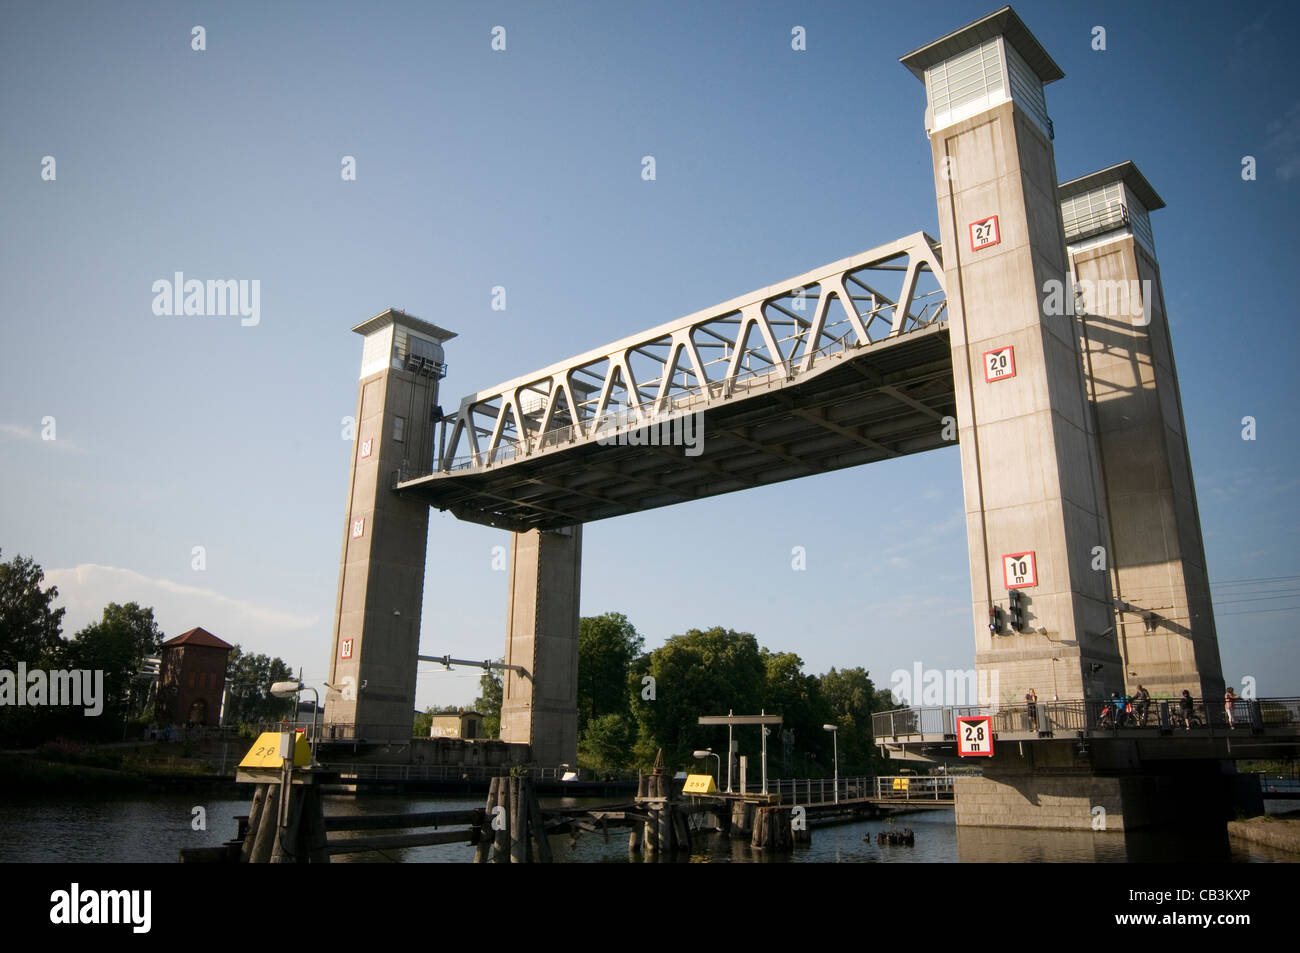 Trollhattan puente levadizo puente lifing gota canal canales Suecia Foto de stock